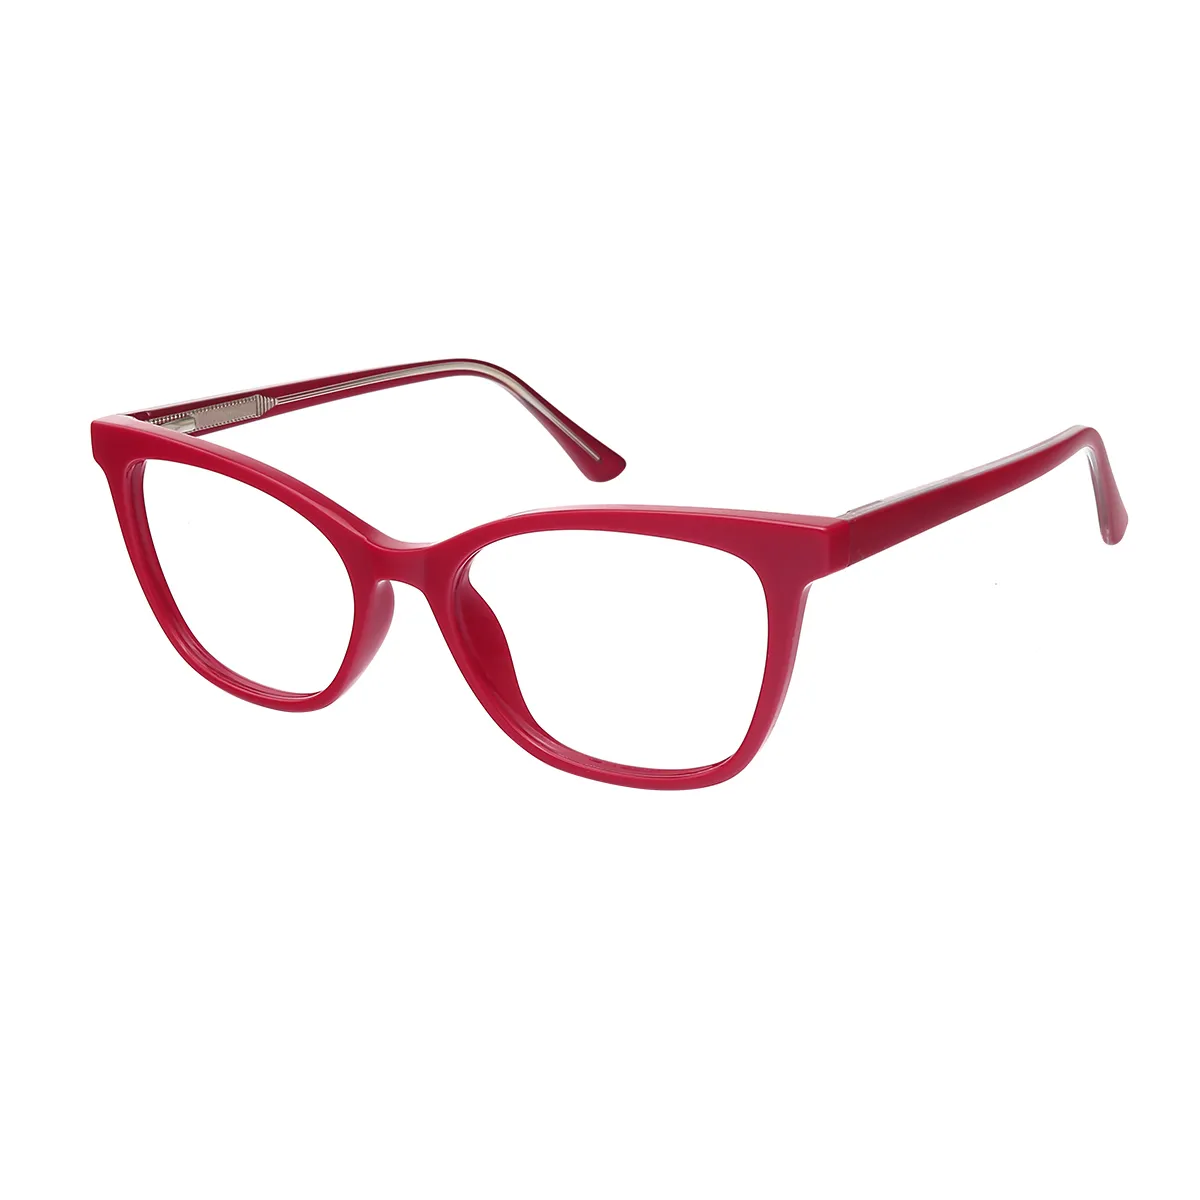 House - Cat-eye Red Glasses for Women